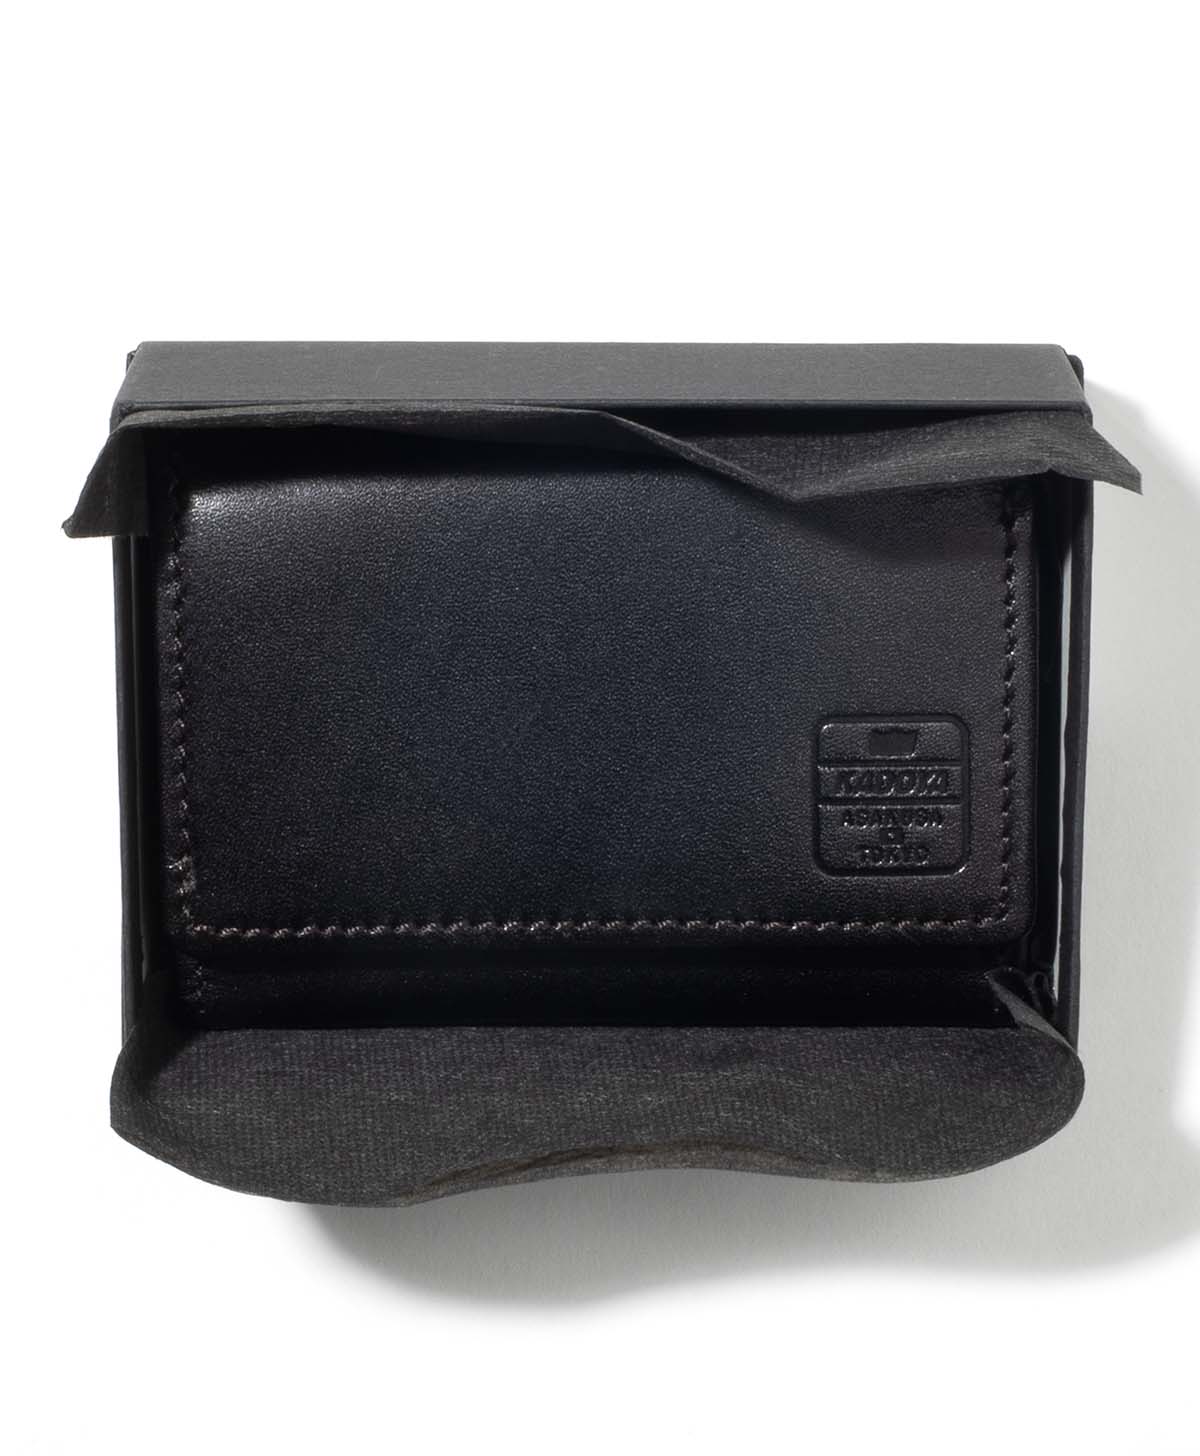 3fold dompet kompak / hitam